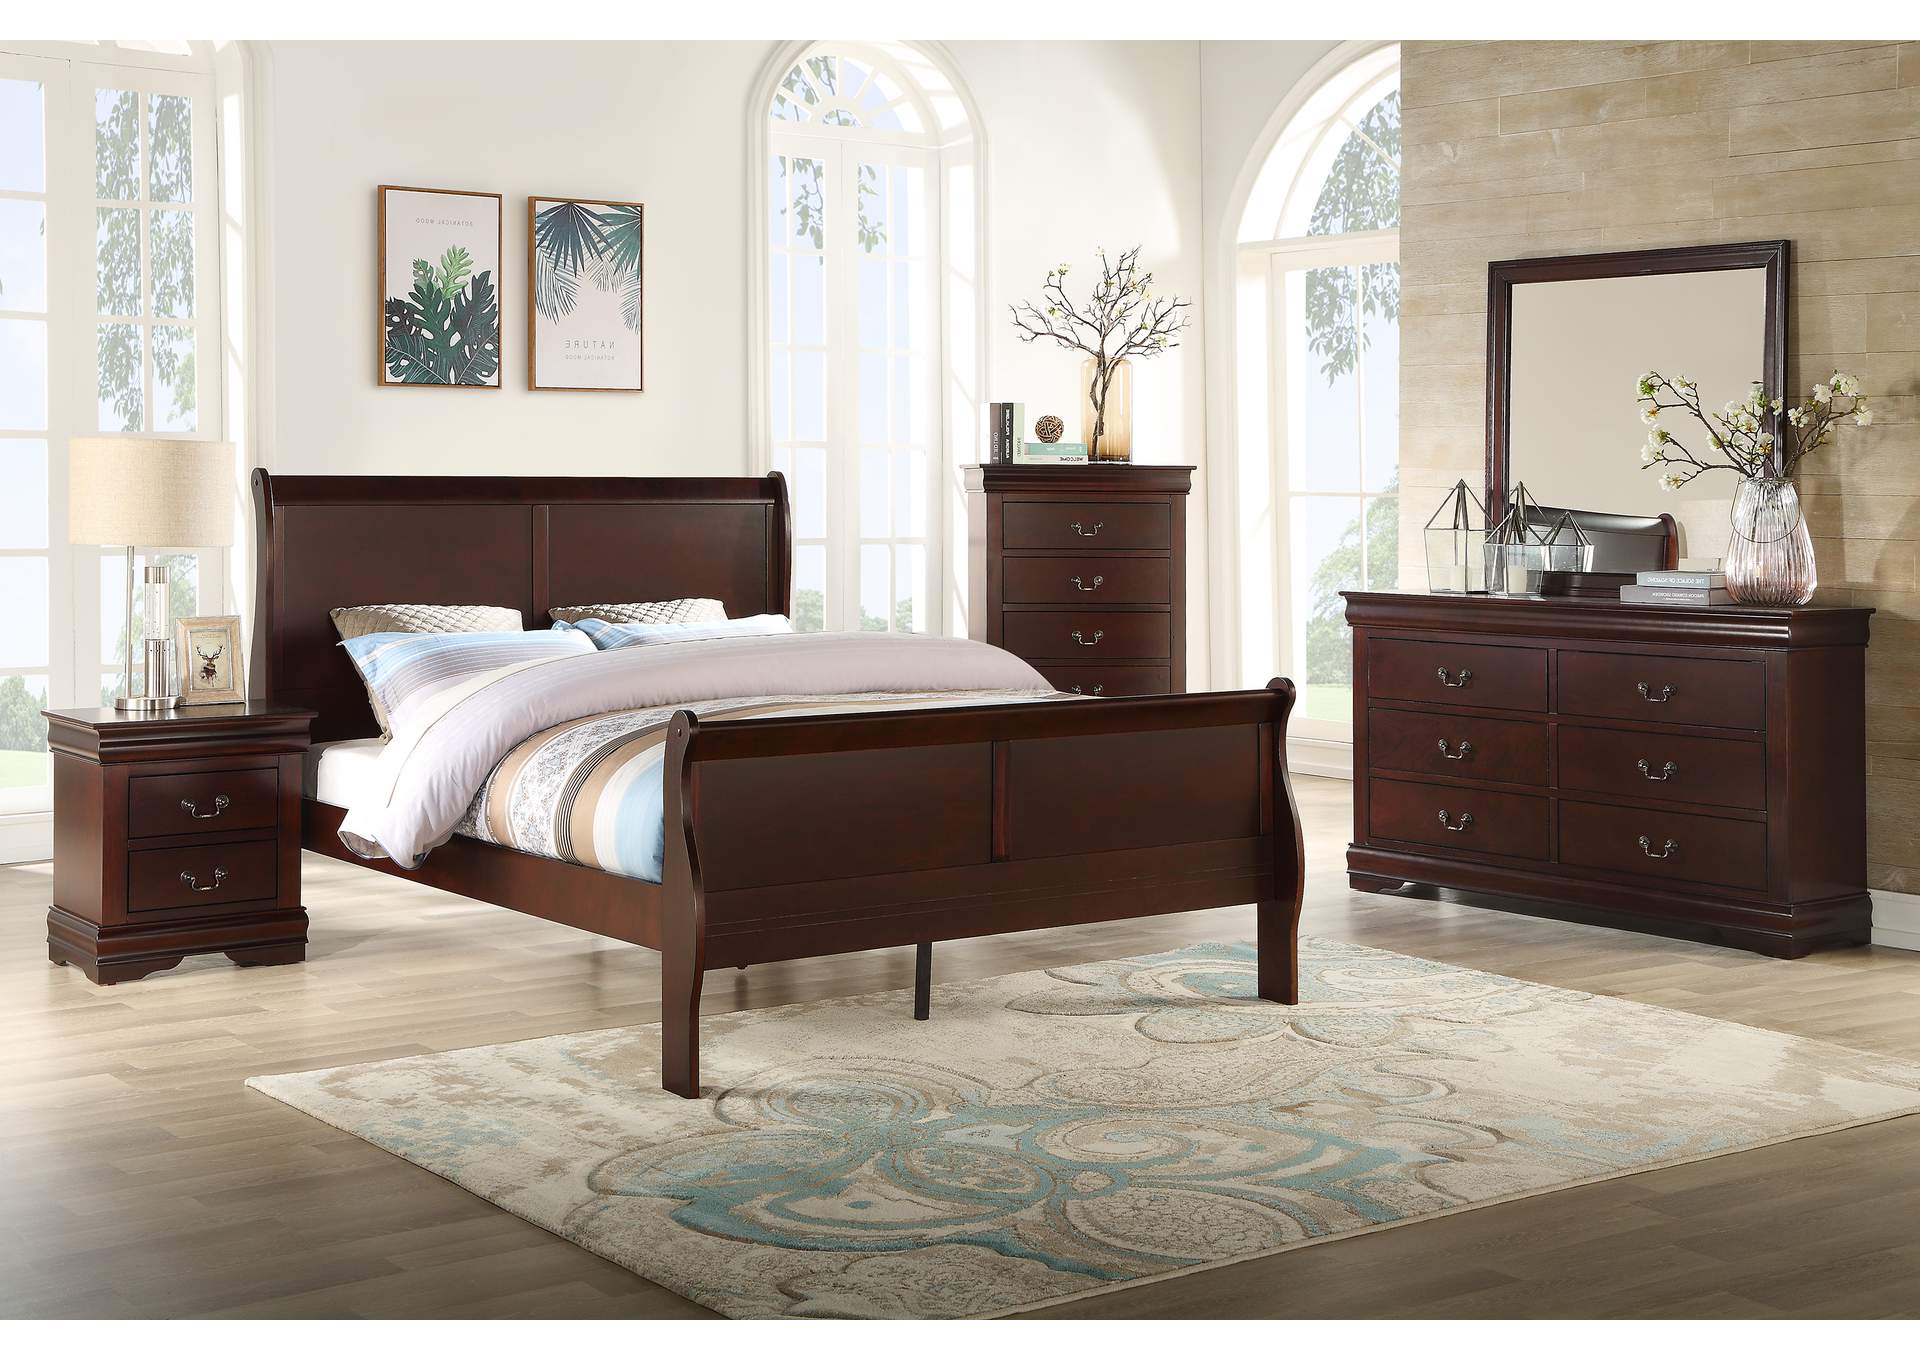 Louis Philip Cherry Full Bed W/ Dresser, Mirror, Nightstand, Chest,Crown Mark